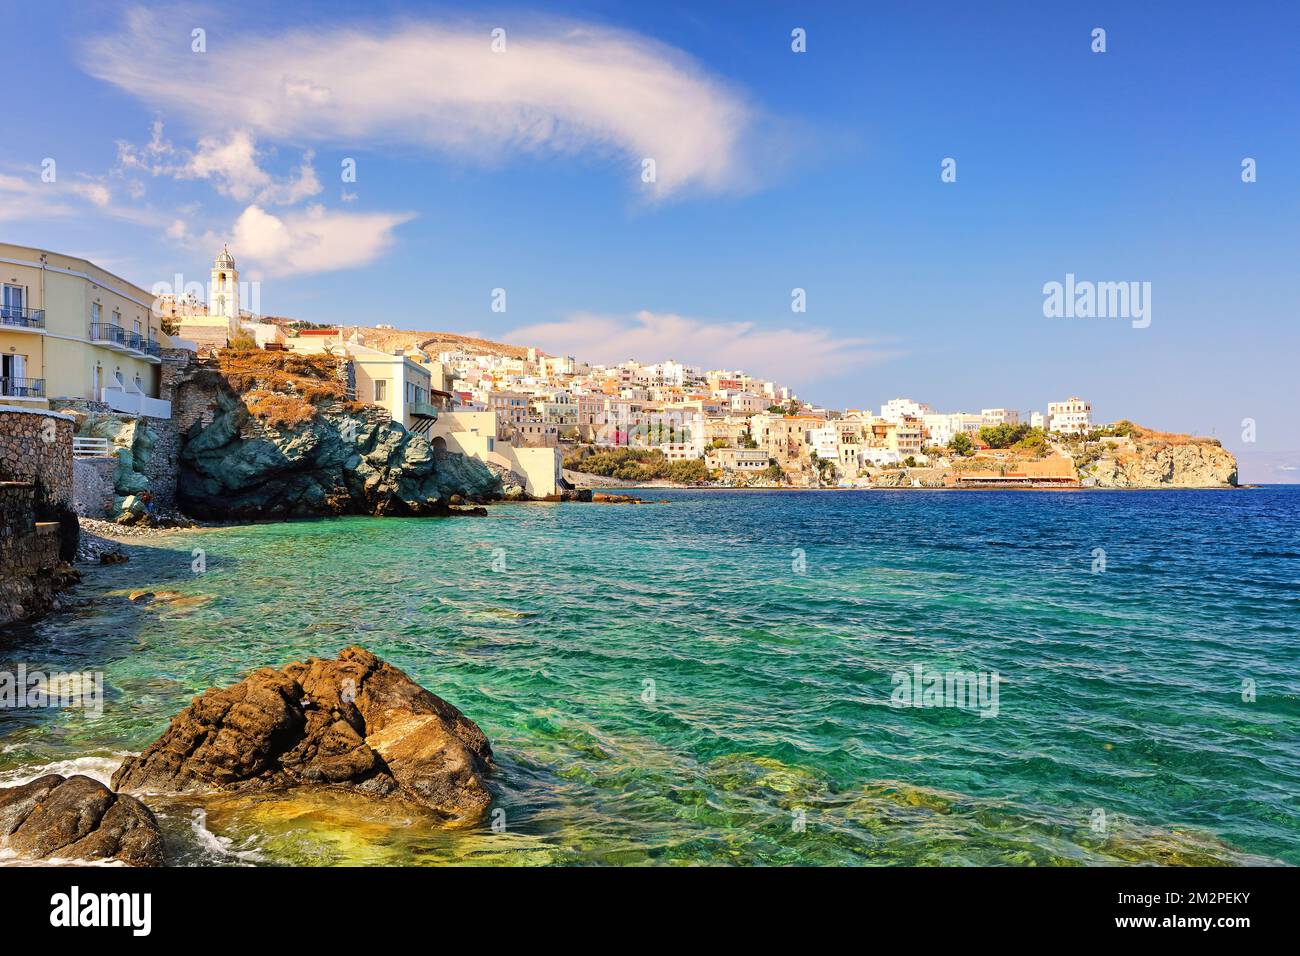 La plage Agios Nikolaos - Asteria - Vaporia de la plage des vagues de l'île de Syros, Grèce Banque D'Images